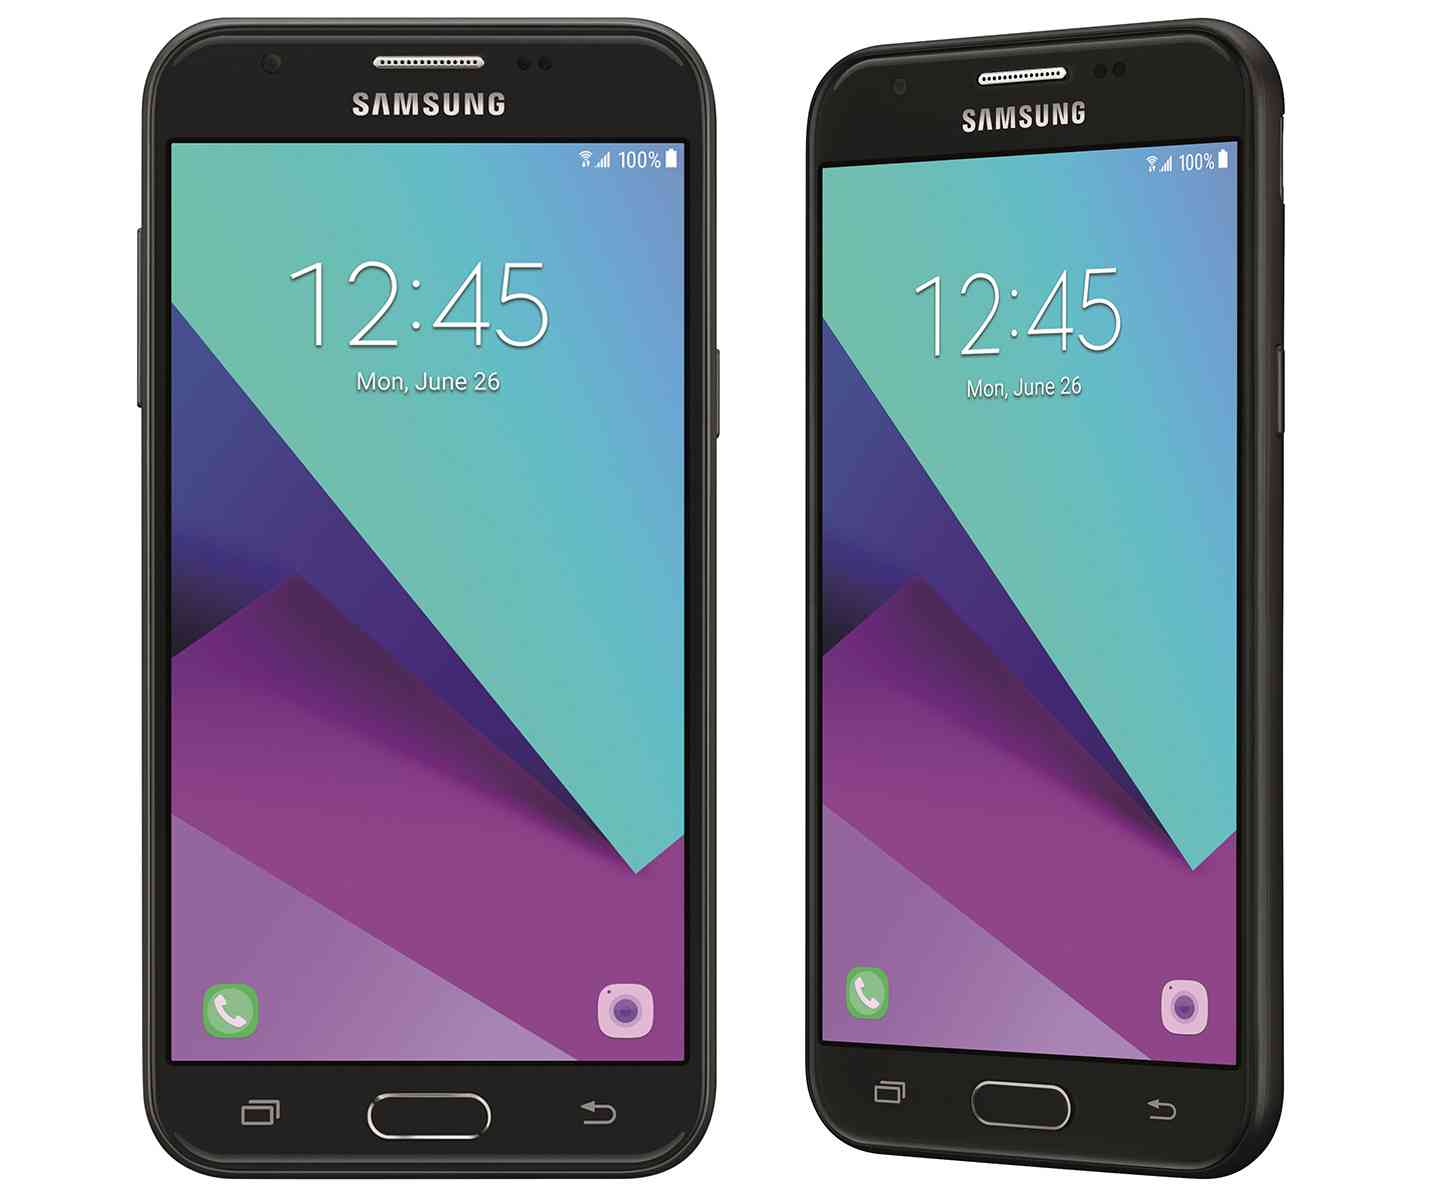 Samsung Galaxy J3 unlocked official